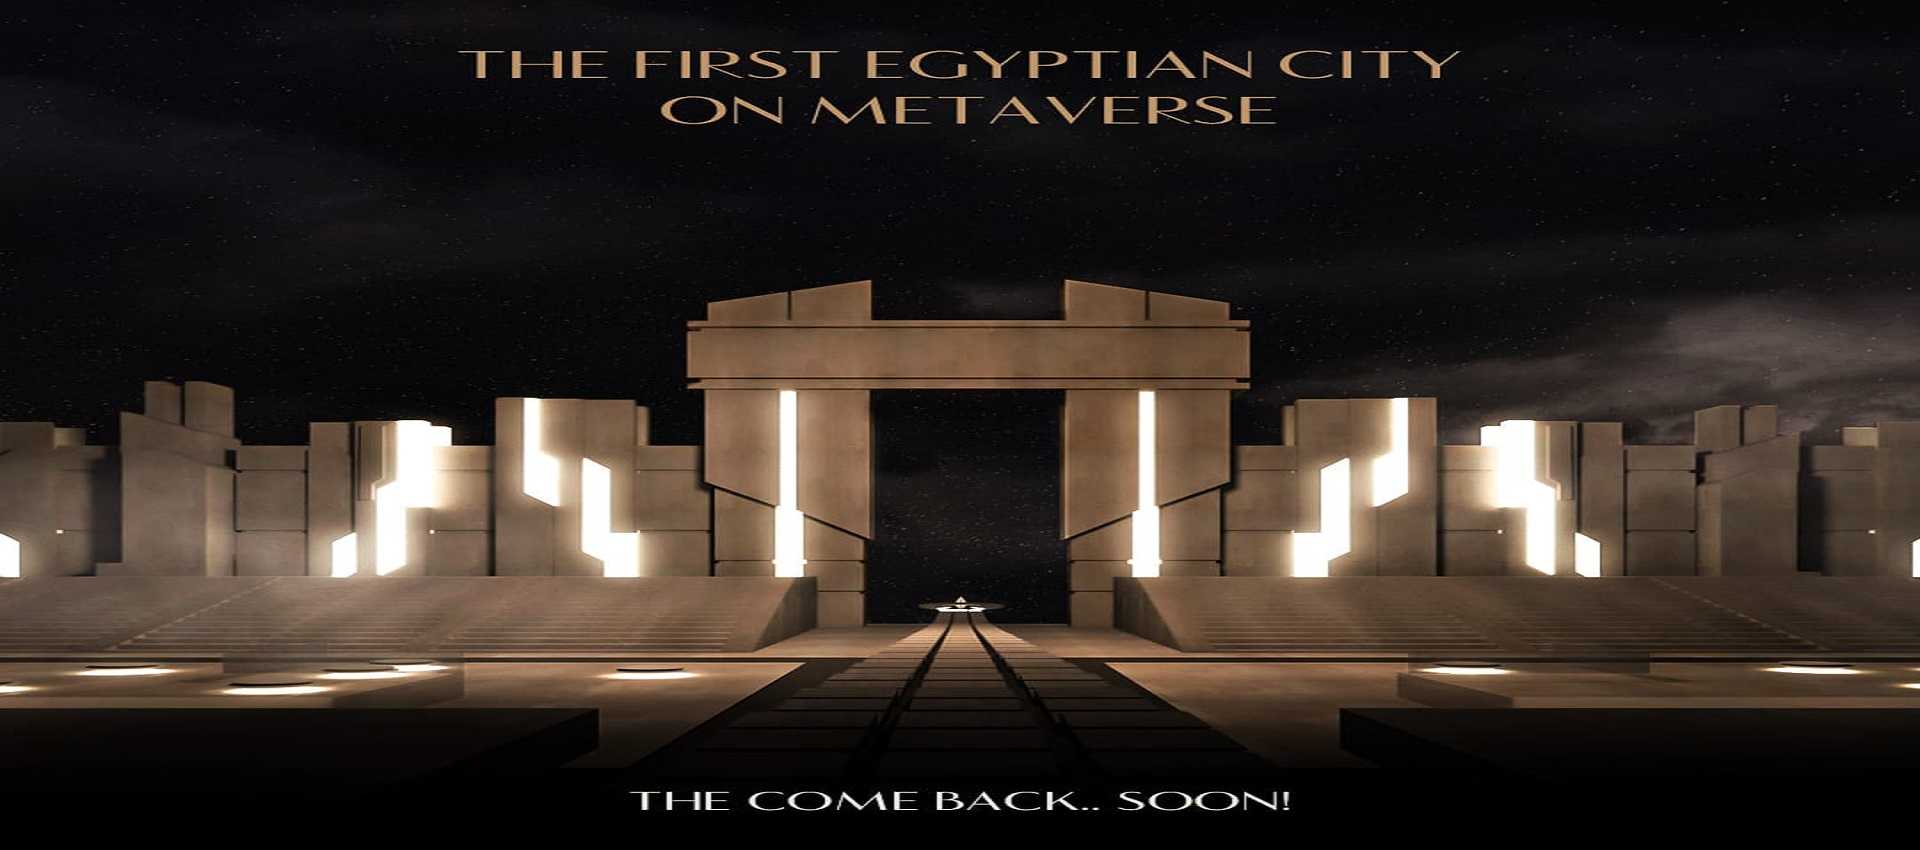 اول مدينة مصرية على الميتافيرس